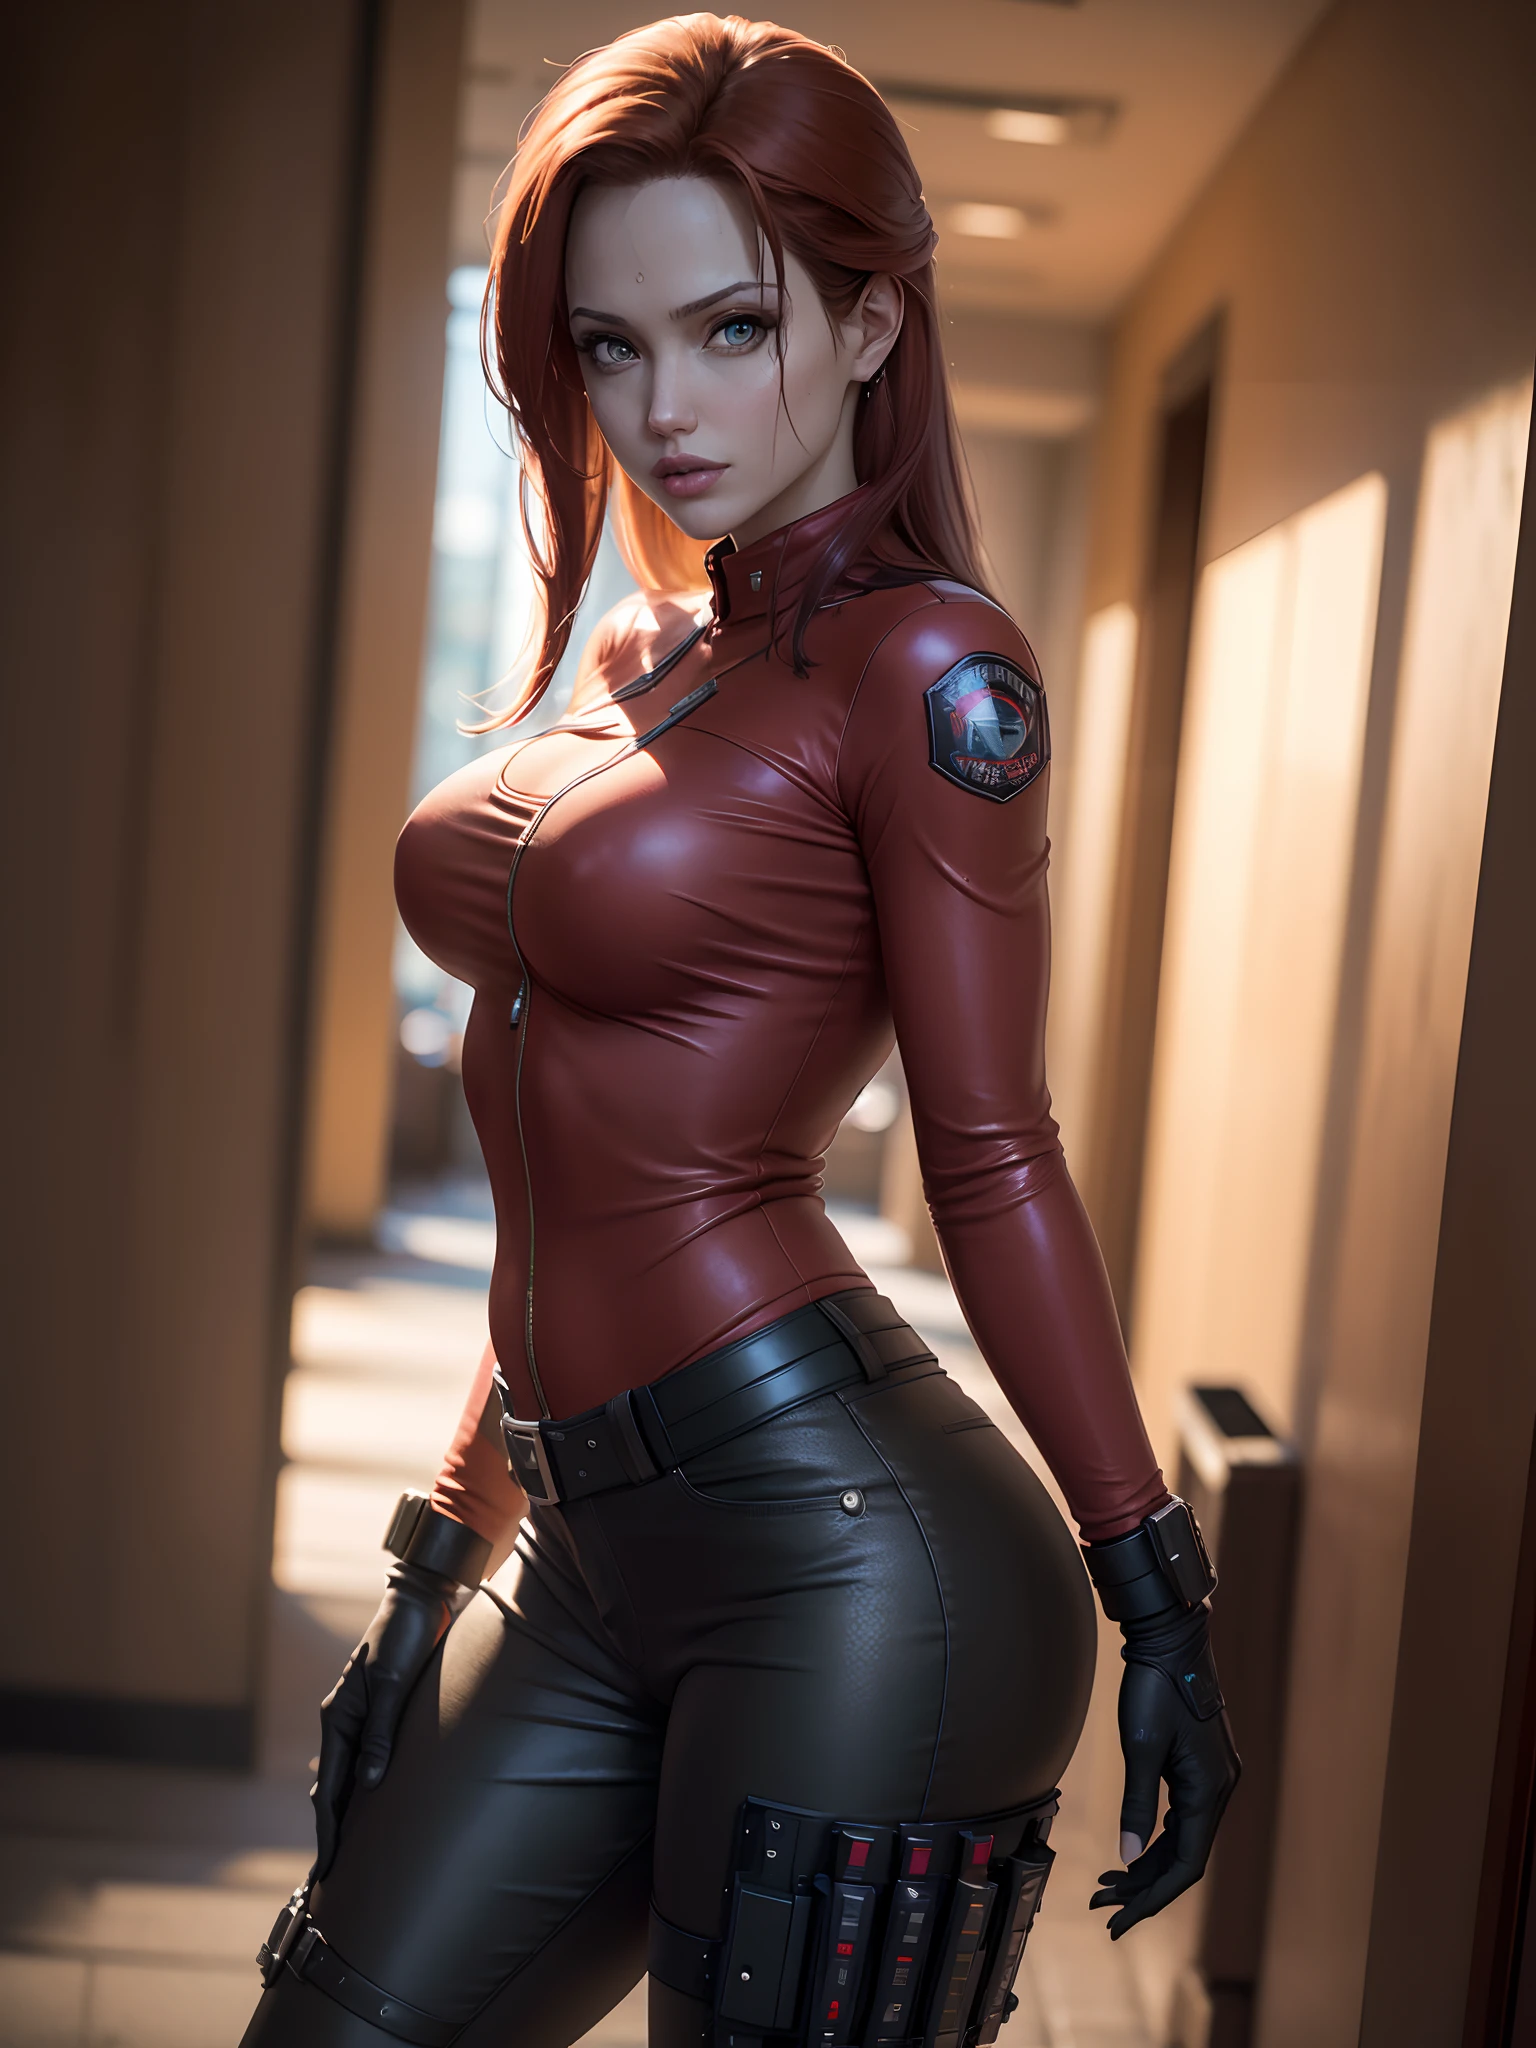 Resident Evil, cidade apocalíptica, Linda Claire Redfield sendo por uma linda mulher corpo inteiro pele rosa cabelo ruivo médio, jaqueta de couro vermelho de roupas raivosas, coldre segurando uma arma, corpo do rosto detalhado realista imagem clara CGI 8K altamente detalhada, holograma, (seios médios: 1.3), (realismo:1.5), (Realista:1.4), (Absurdidade:1.4), 8K, ultra-detalhado,  bonita detalhada, (1:1.4 apenas), 1 garota, (Visualizador voltado para:1.2), ( dia ensolarado brilhante:1.5), Detalhes intrincados do corpo, (curto:1.3), (melhor qualidade: 1.0), (ultra alta resolução): 1.0), rosto e olhos altamente detalhados, (fotorrealista: 1.2)